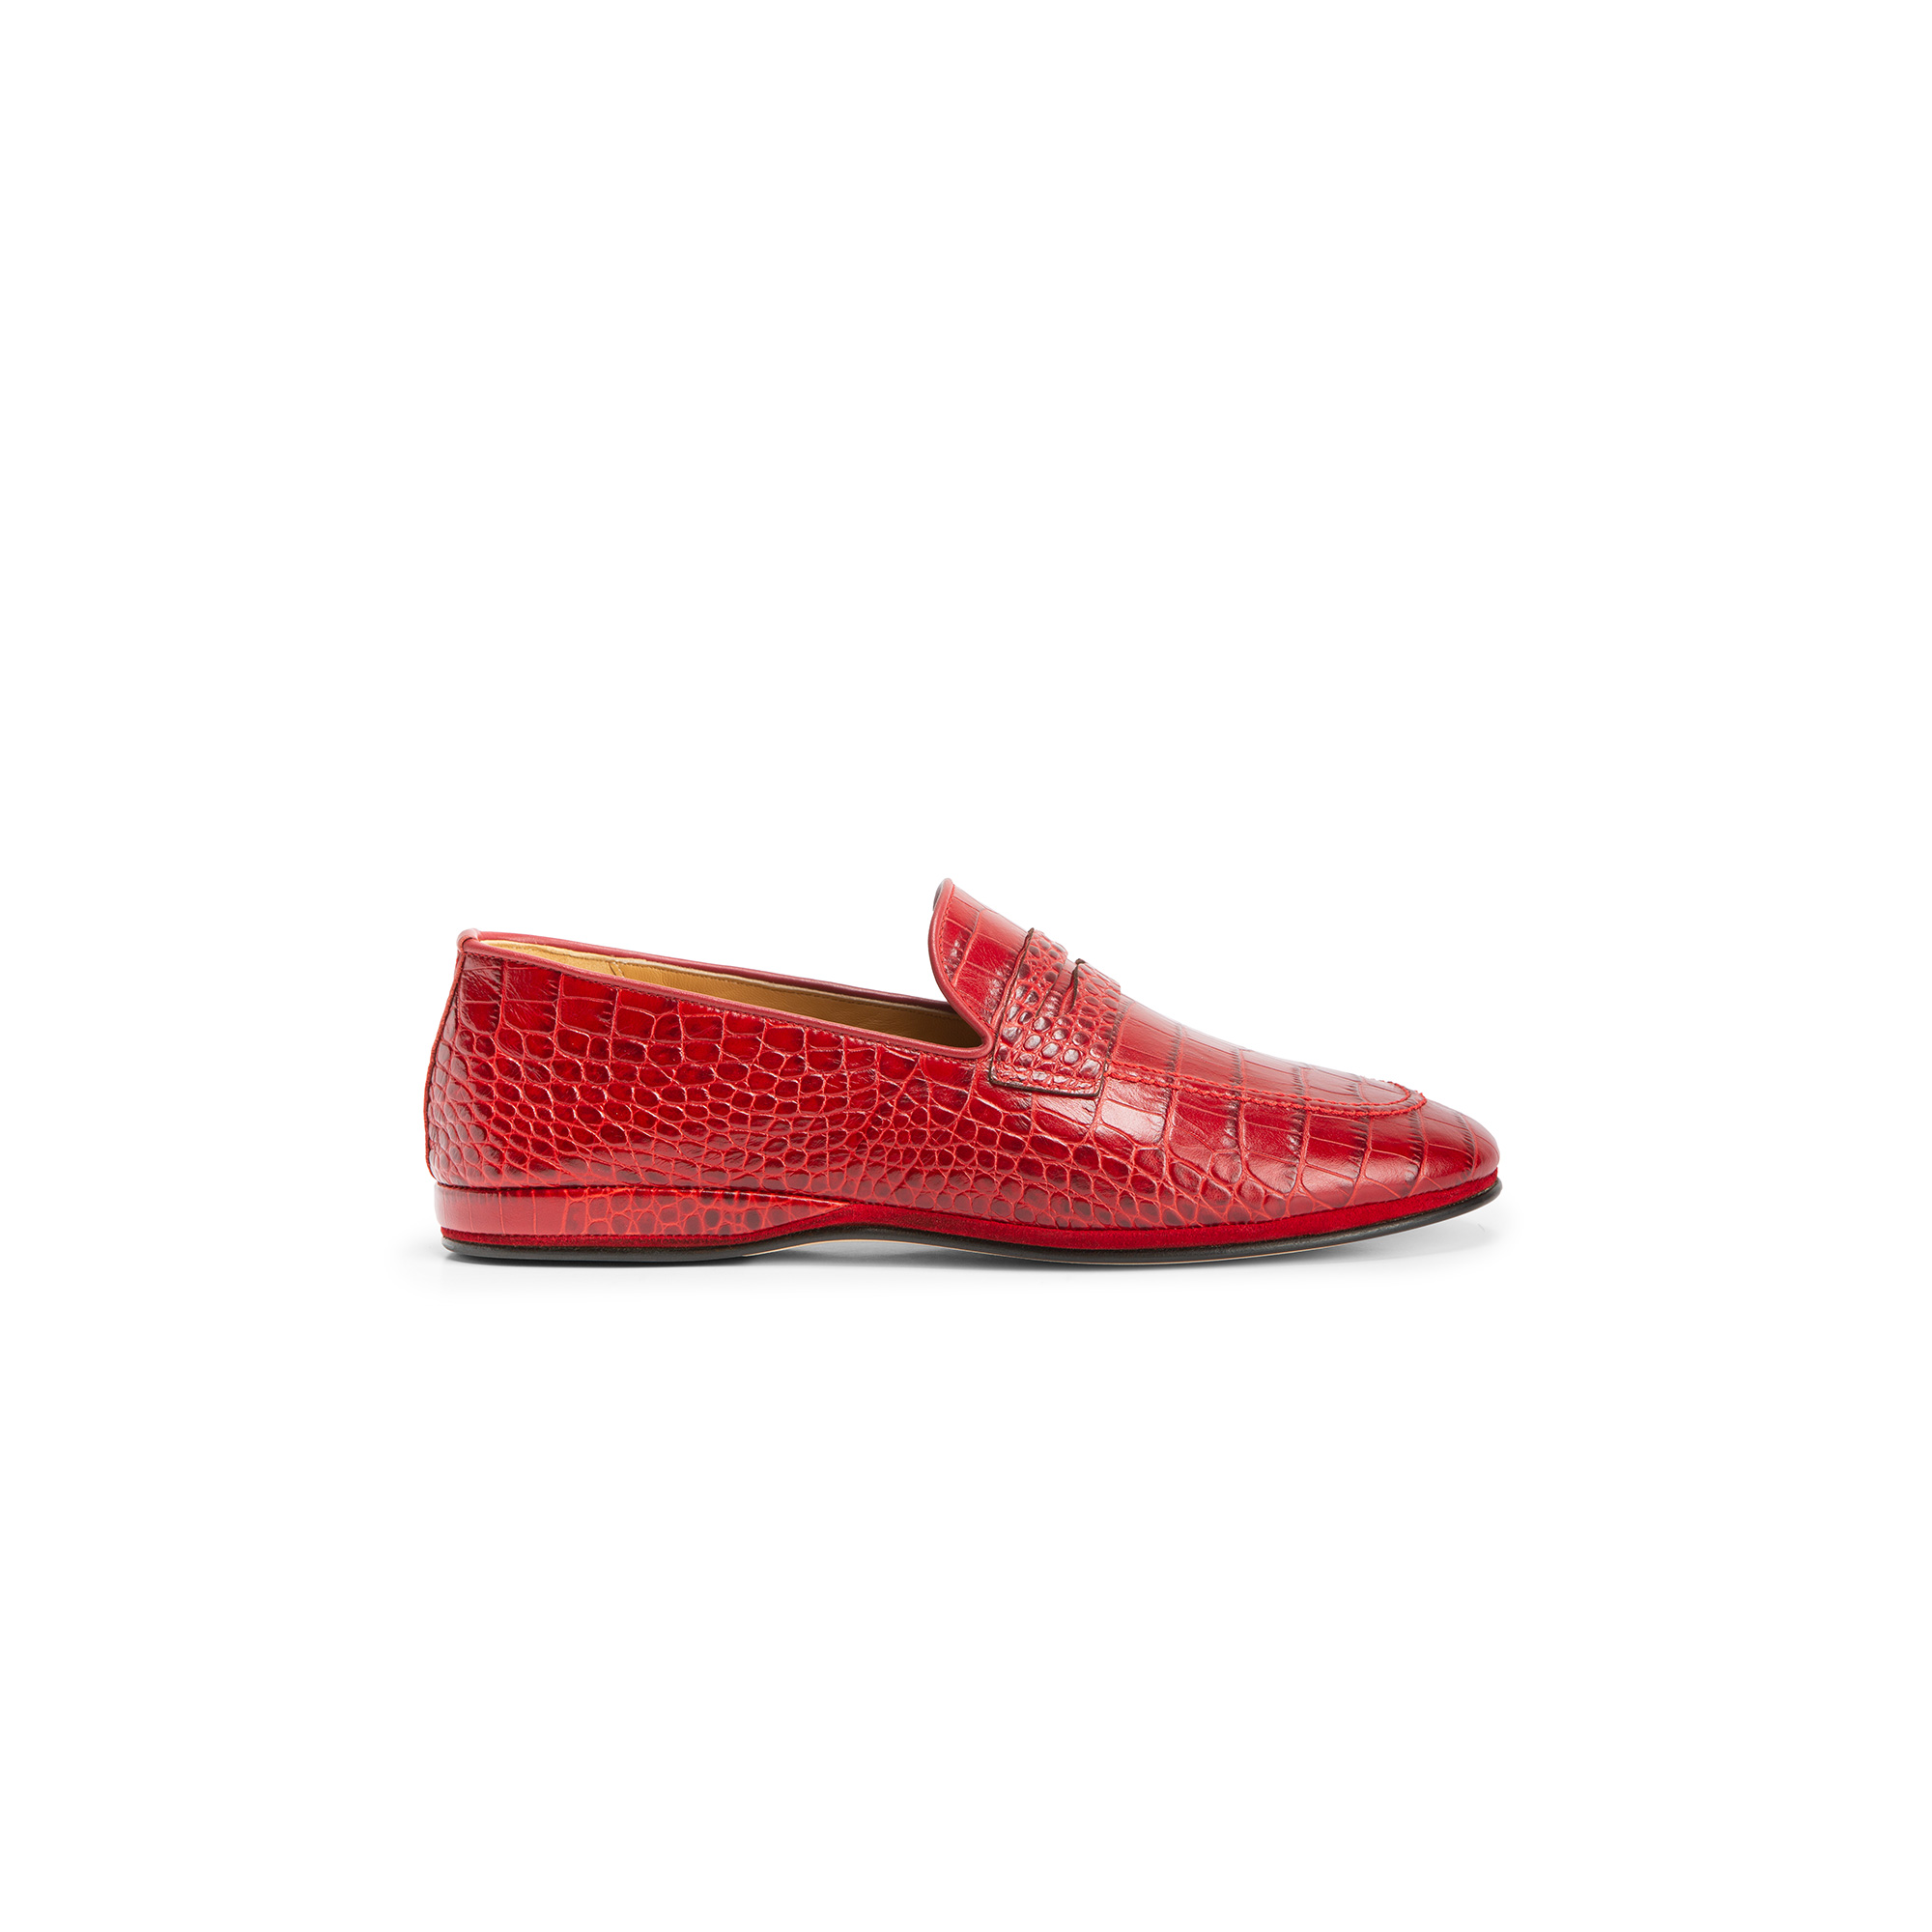 Pantofola chiusa esterno pelle stampato cocco rosso - Farfalla italian slippers